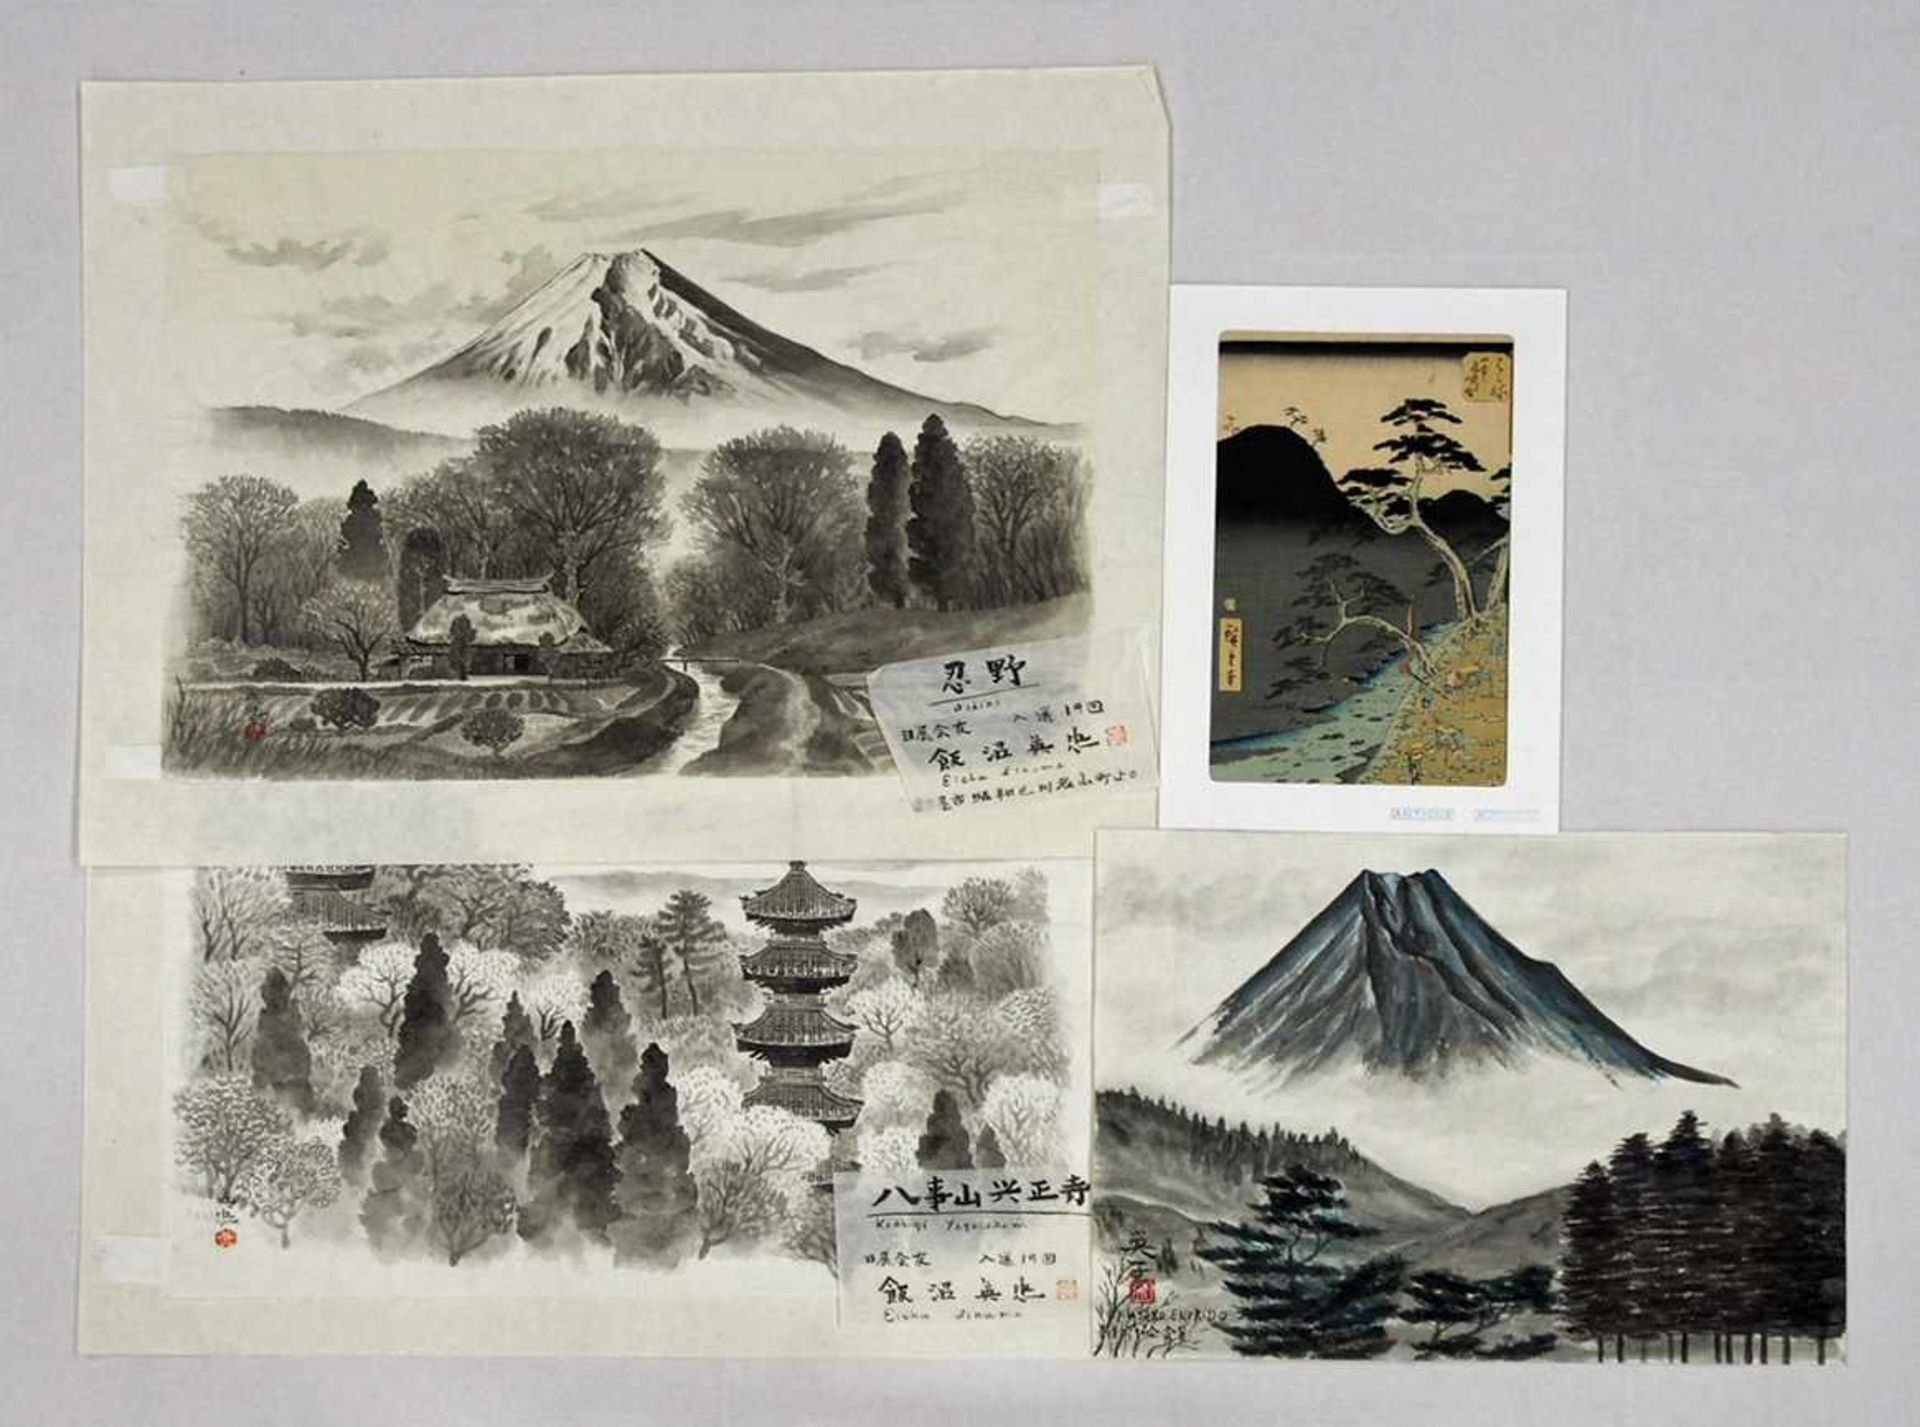 HIROSHIGE, Utagawa1798-1858LandschaftFarbholzschnitt, um 1855, 37 x 25 cm; beigelegt 3 Aquarelle aus